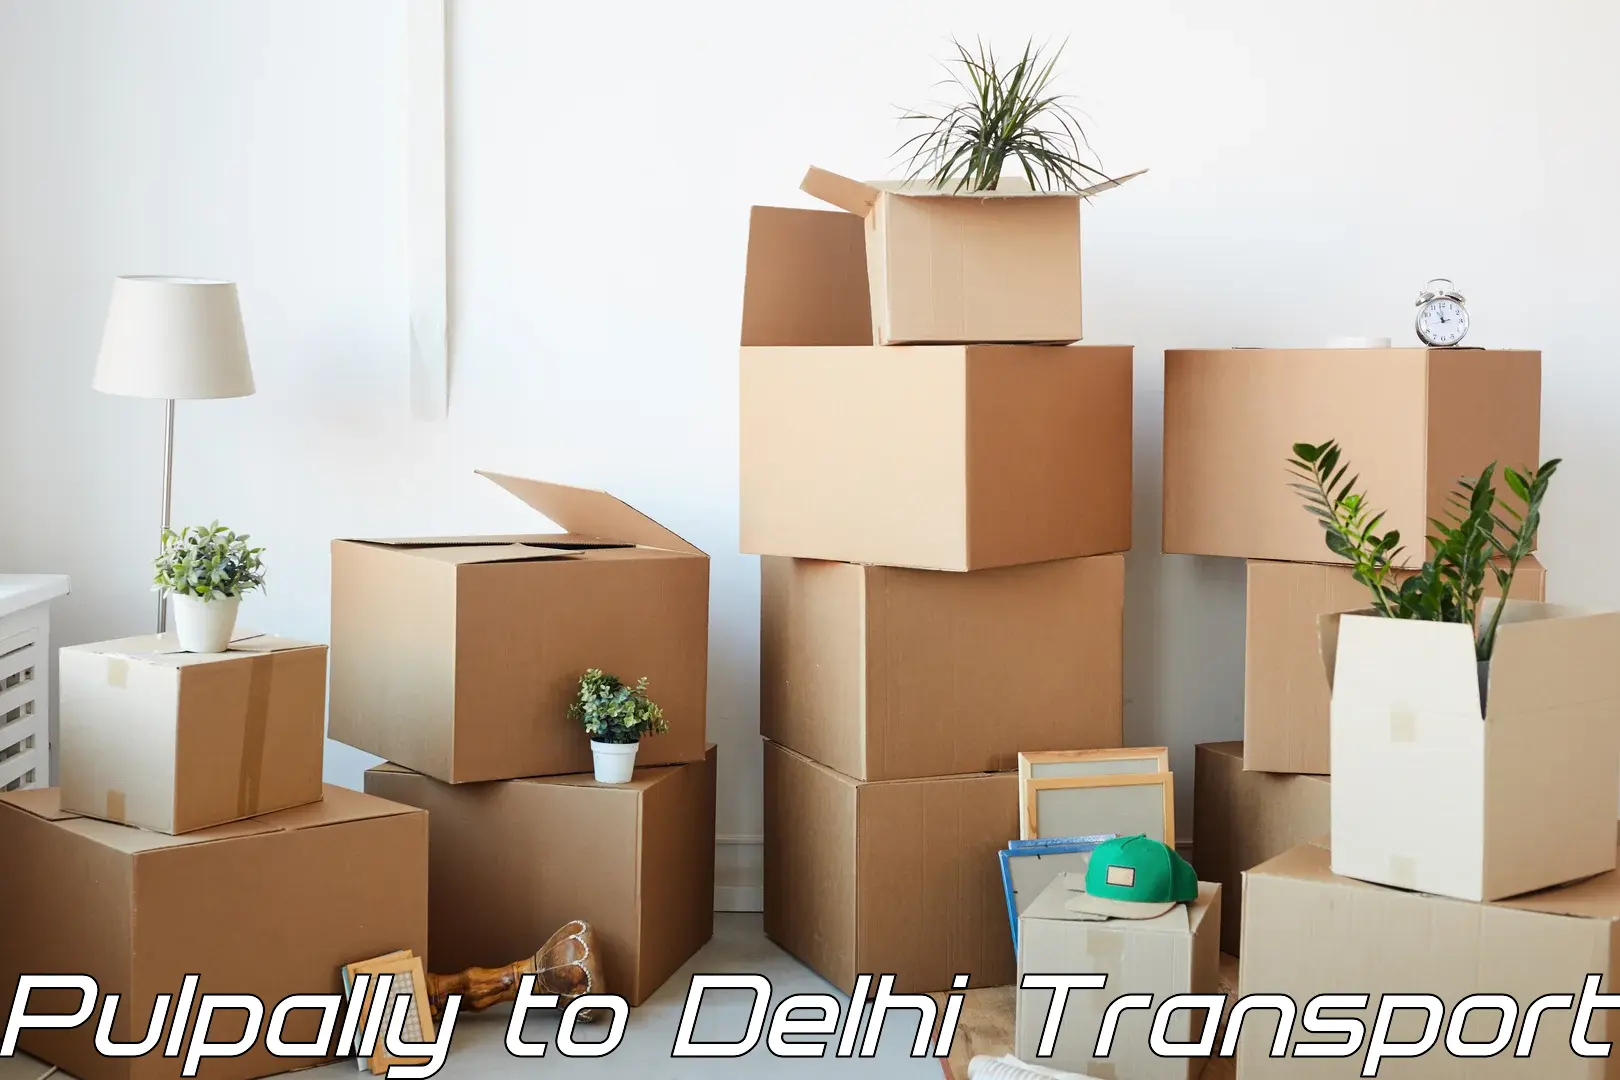 Interstate transport services Pulpally to Delhi